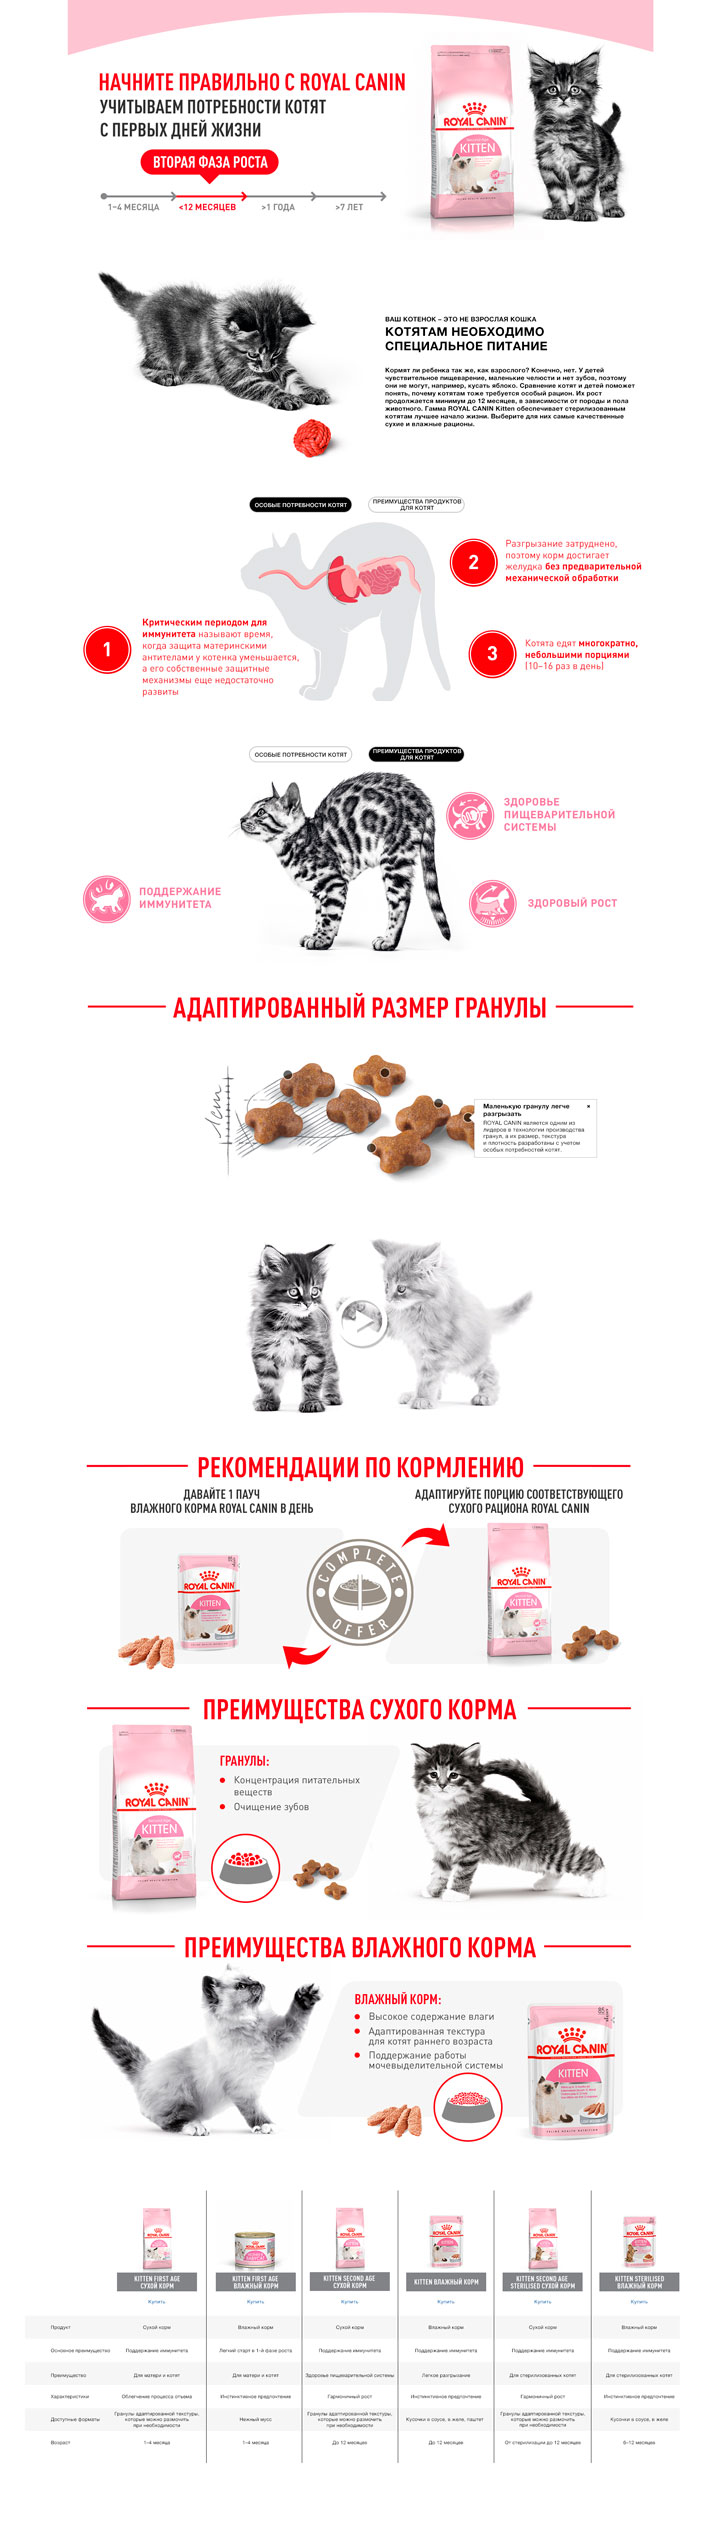 Royal canin kitten корм сухой сбалансированный для котят в период второй фазы роста до 12 месяцев